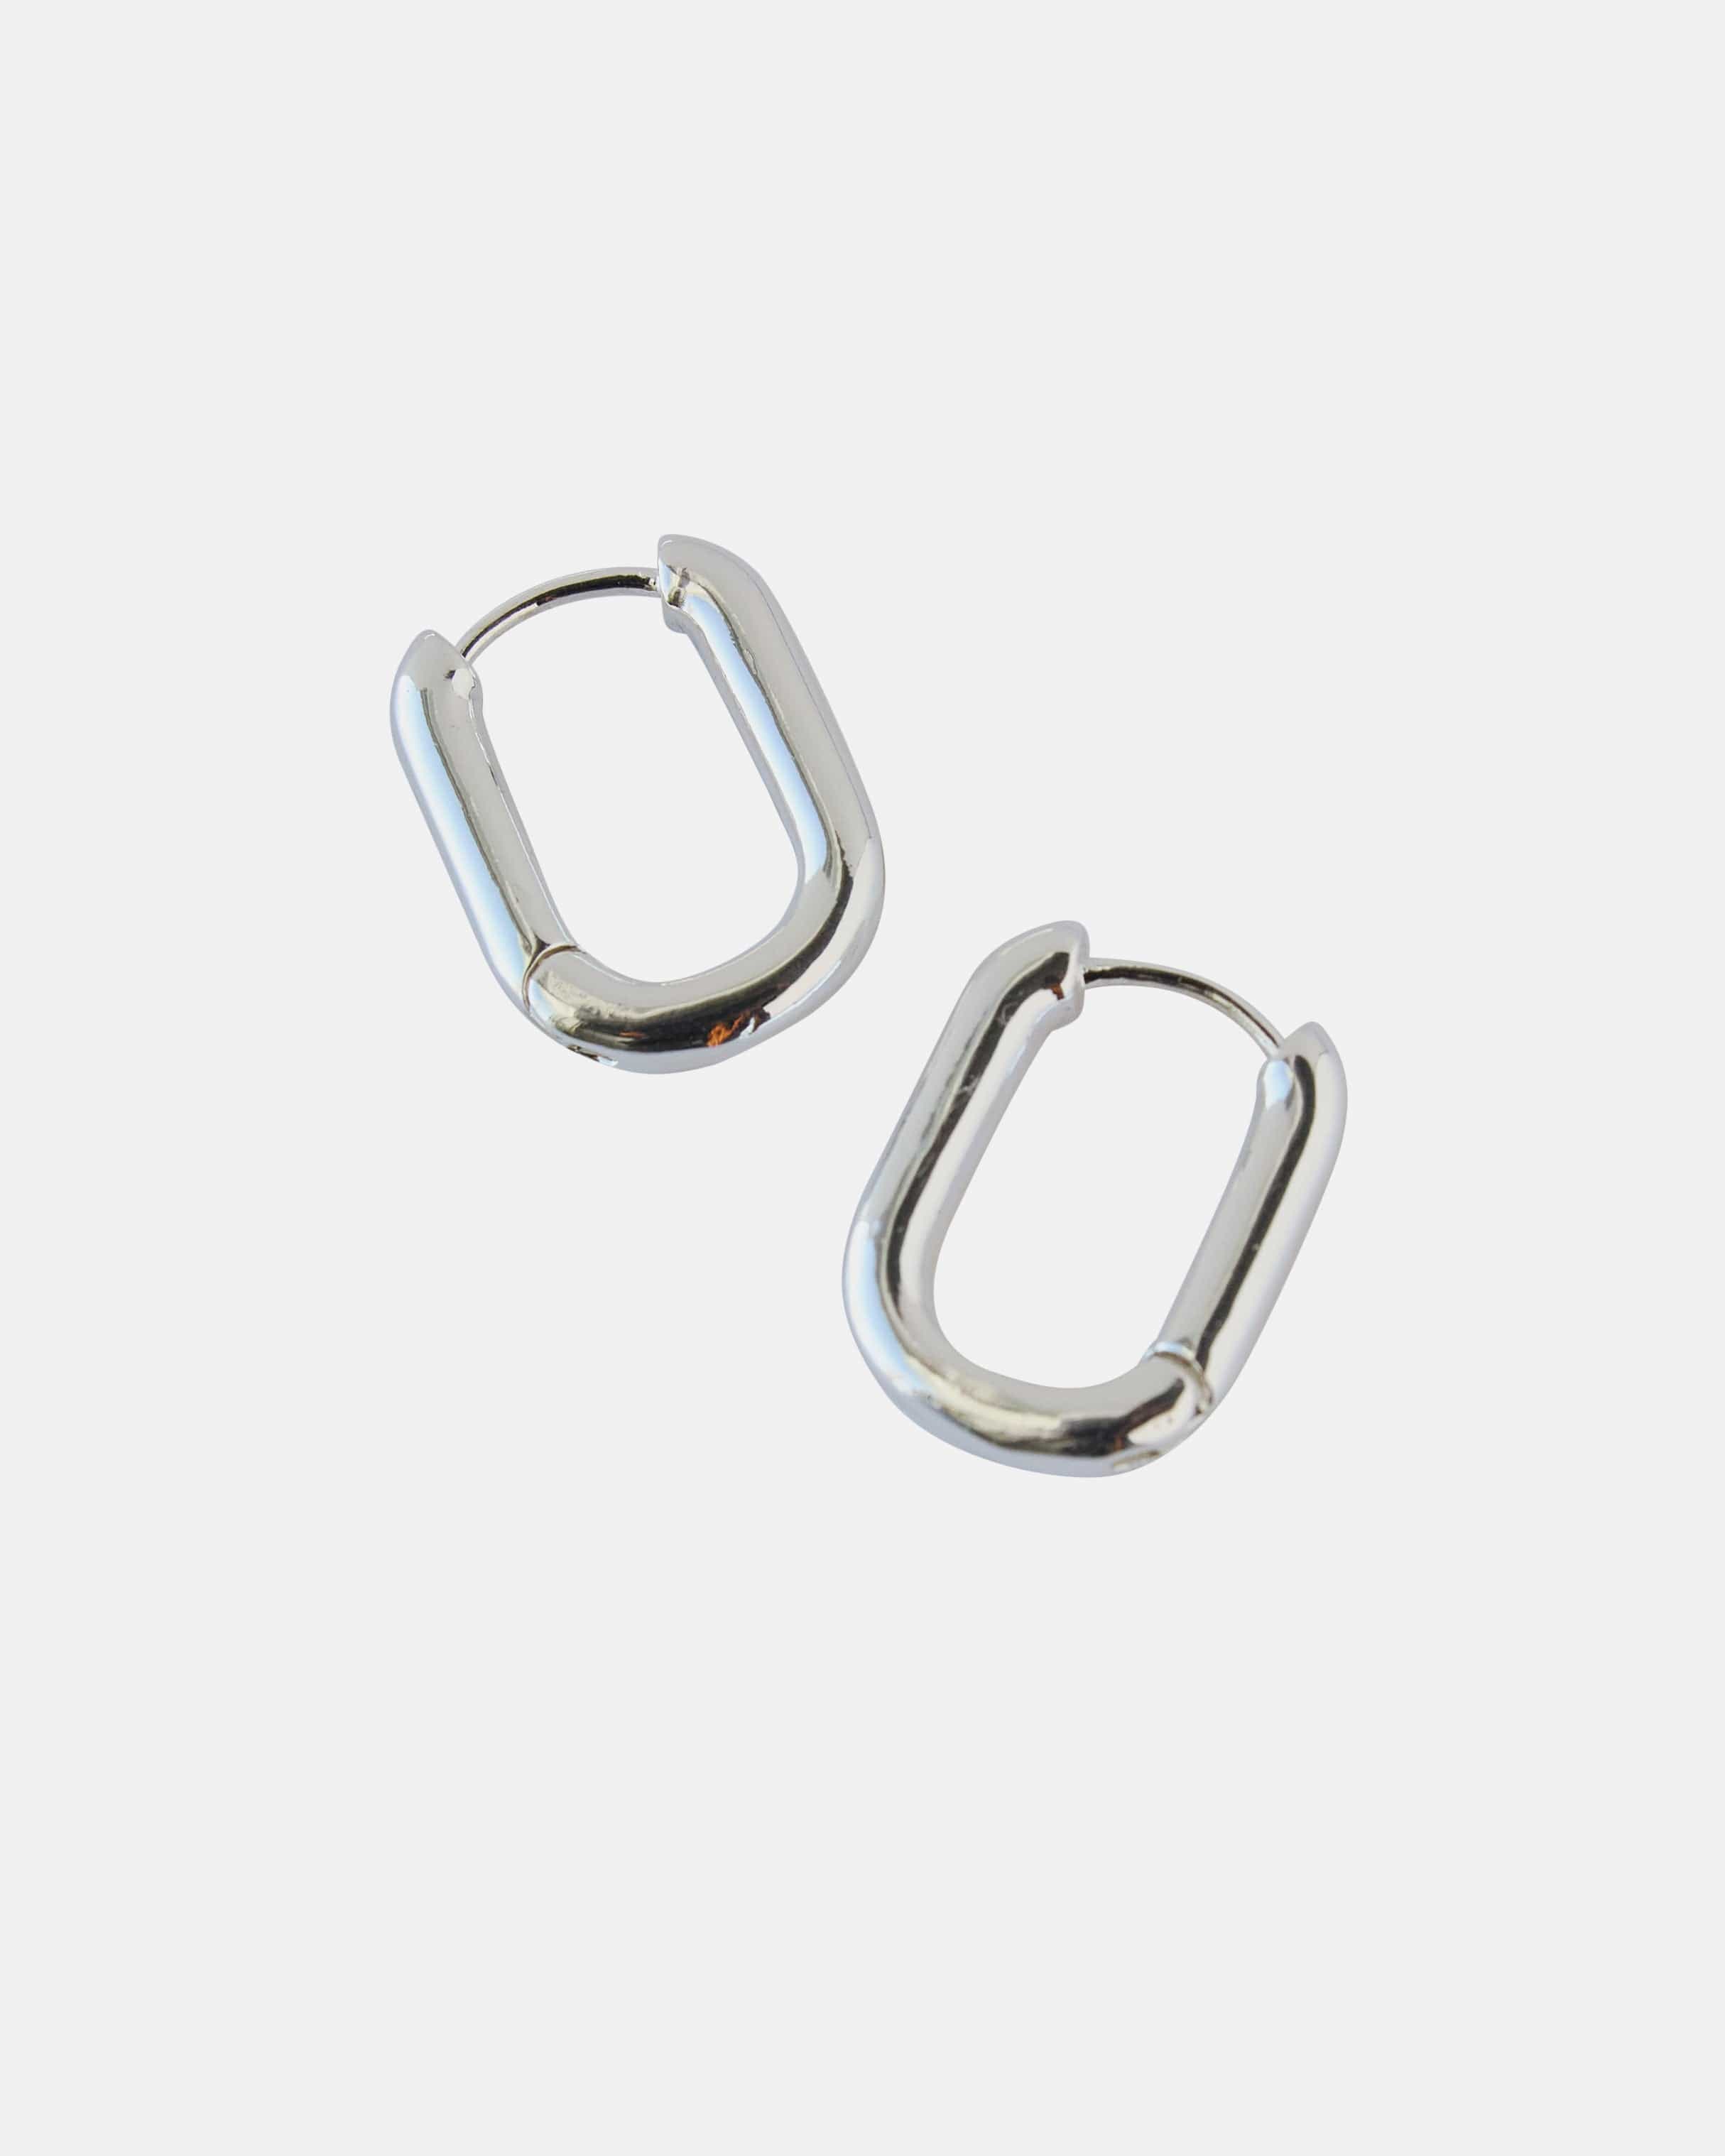 Silver curved hoop earrings.